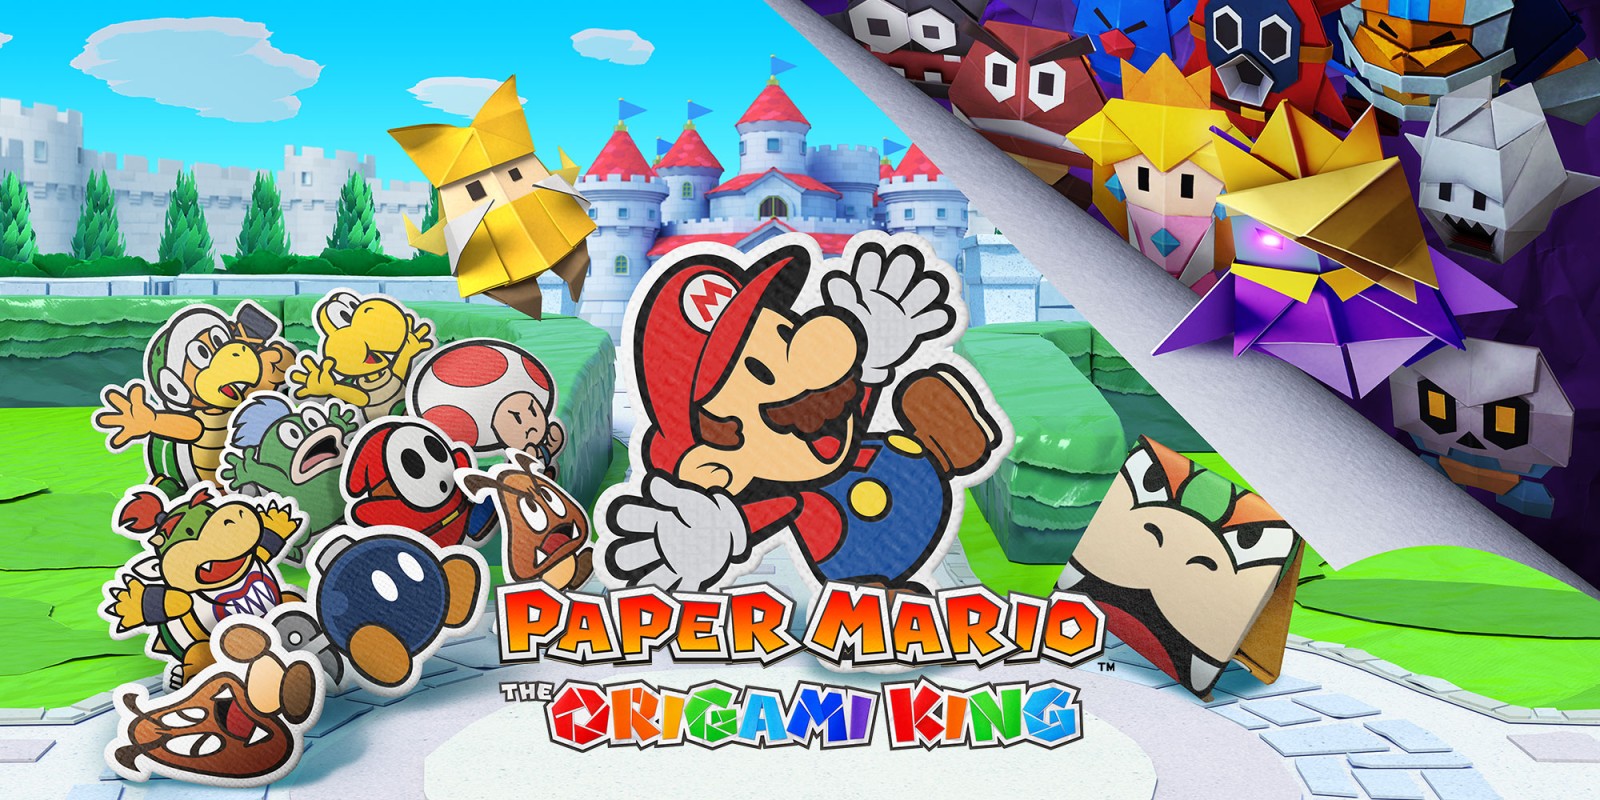 Вы сейчас просматриваете Paper Mario: The Origami King объявлены подарки за предзаказ в магазине Nintendo UK!